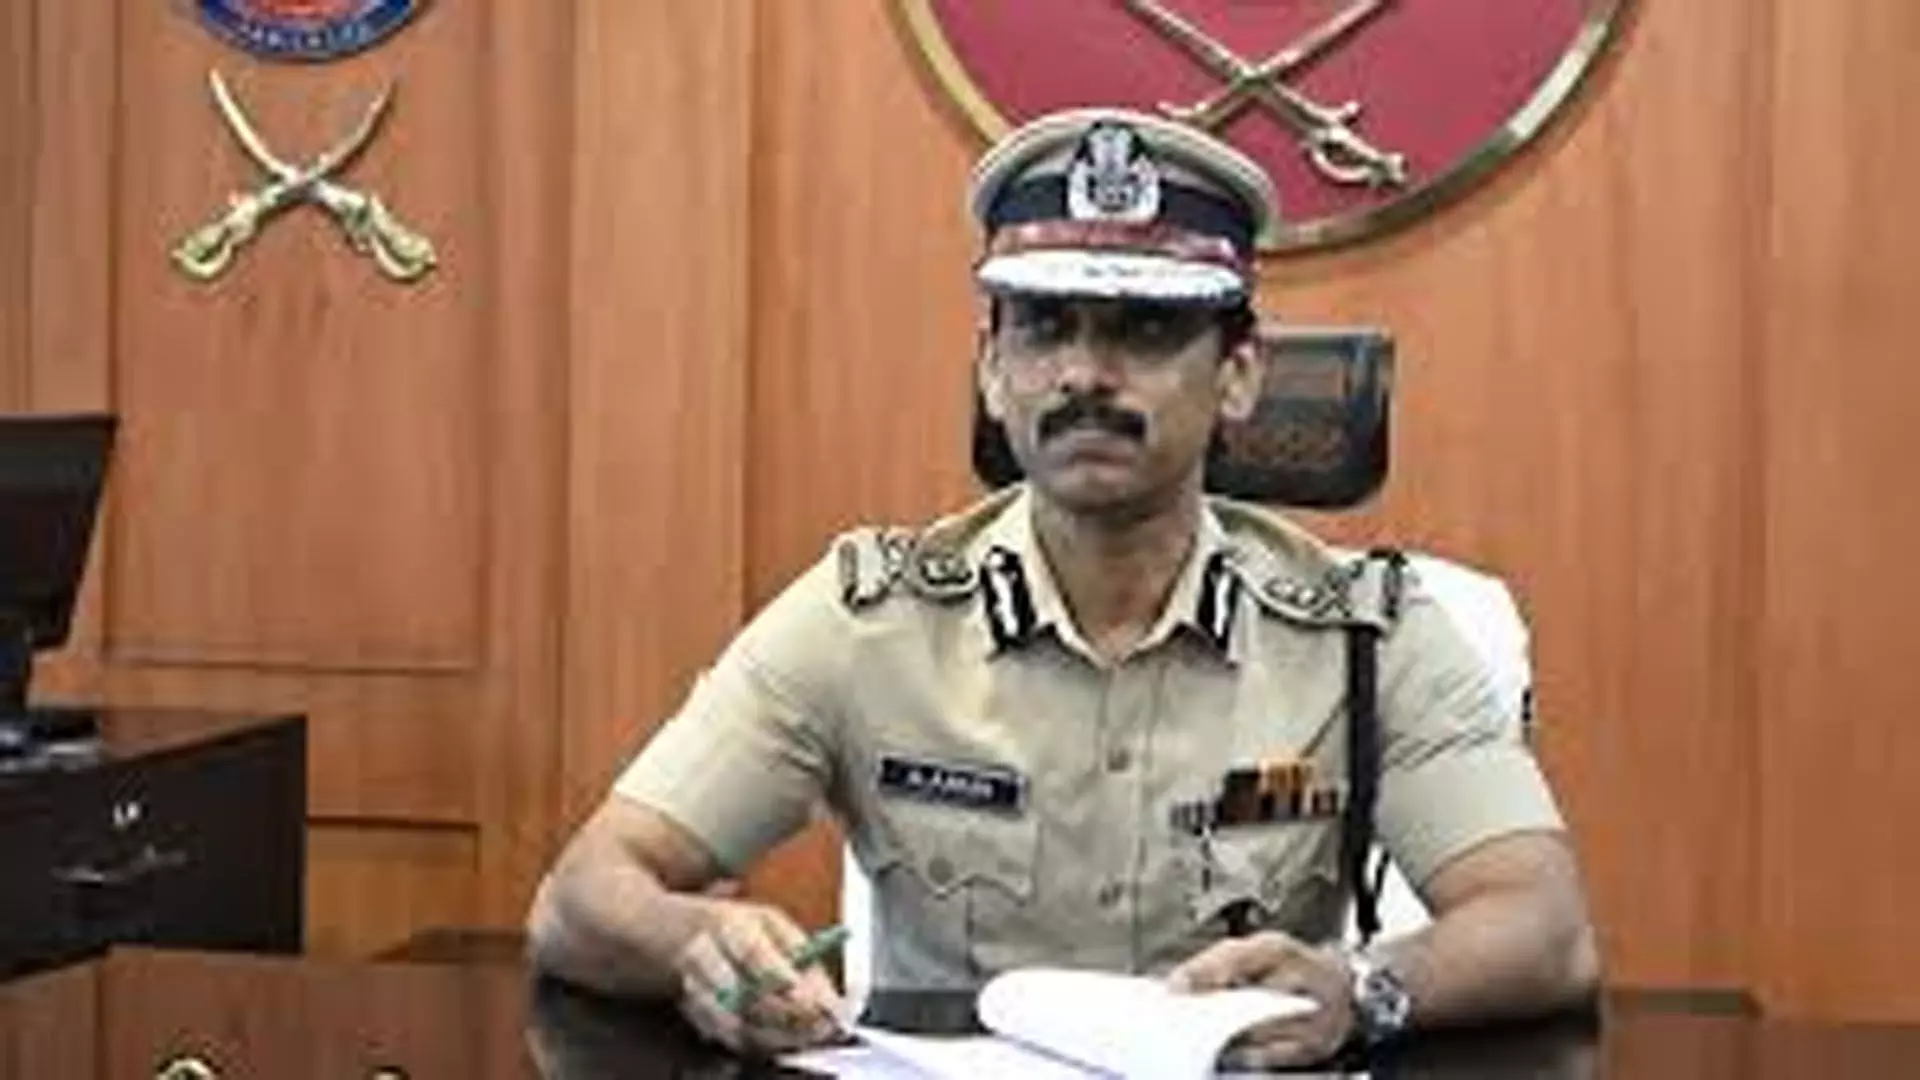 Chennai News : नए पुलिस अधीक्षक ने आपराधिक गतिविधियों पर अंकुश लगाने की शपथ ली